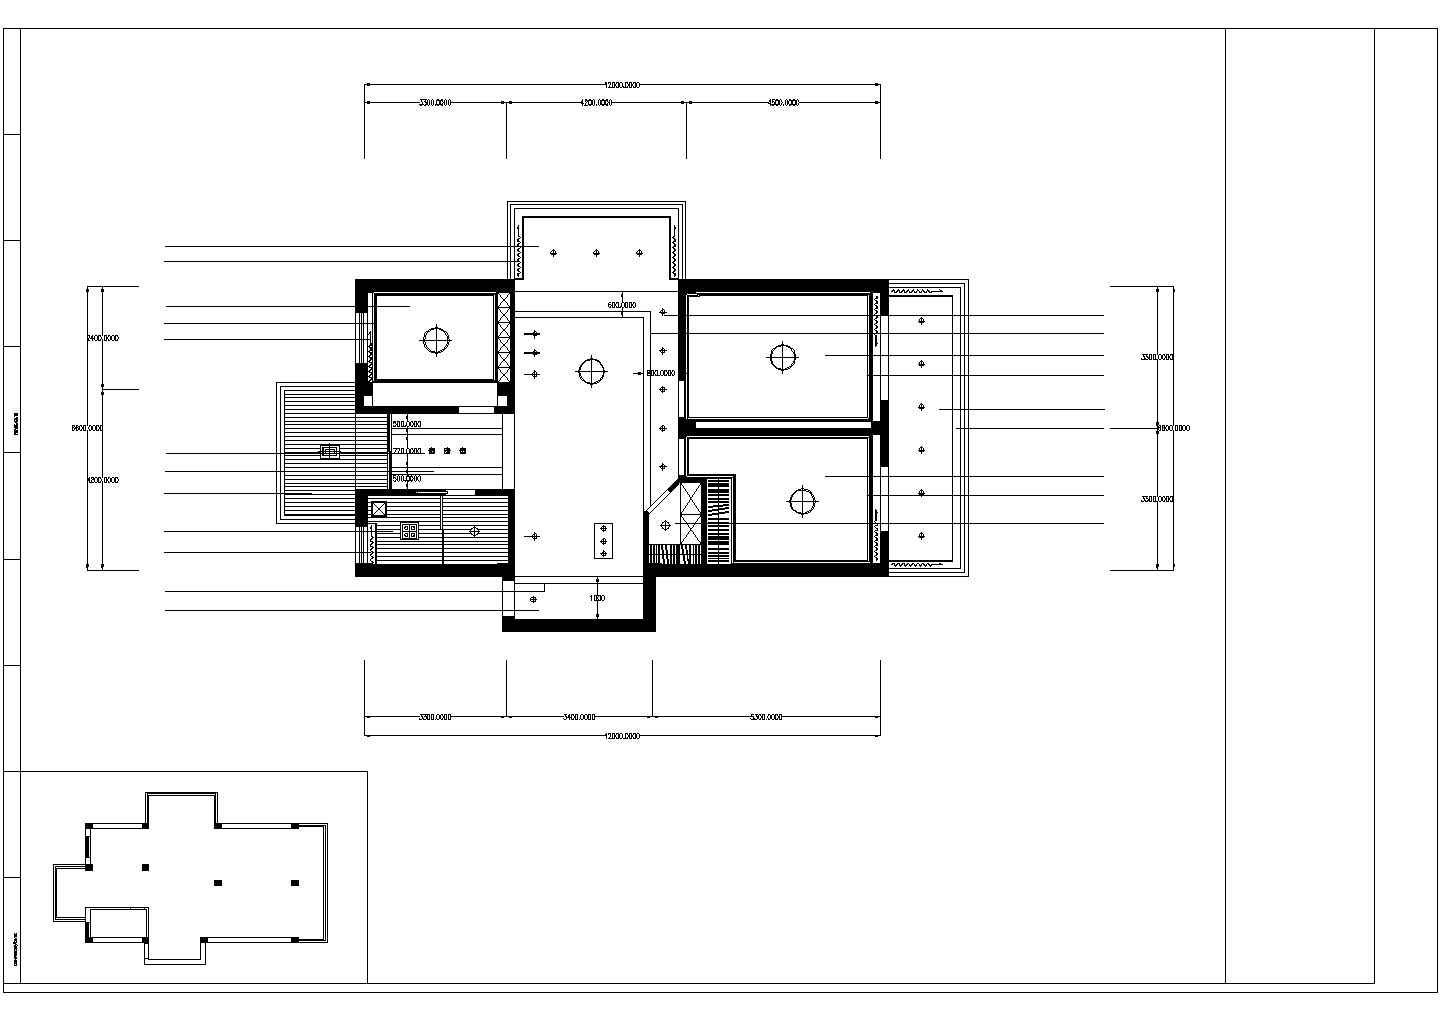 某地3室2厅日式风格装修设计方案图【平面布置图 天花图 室内立面】